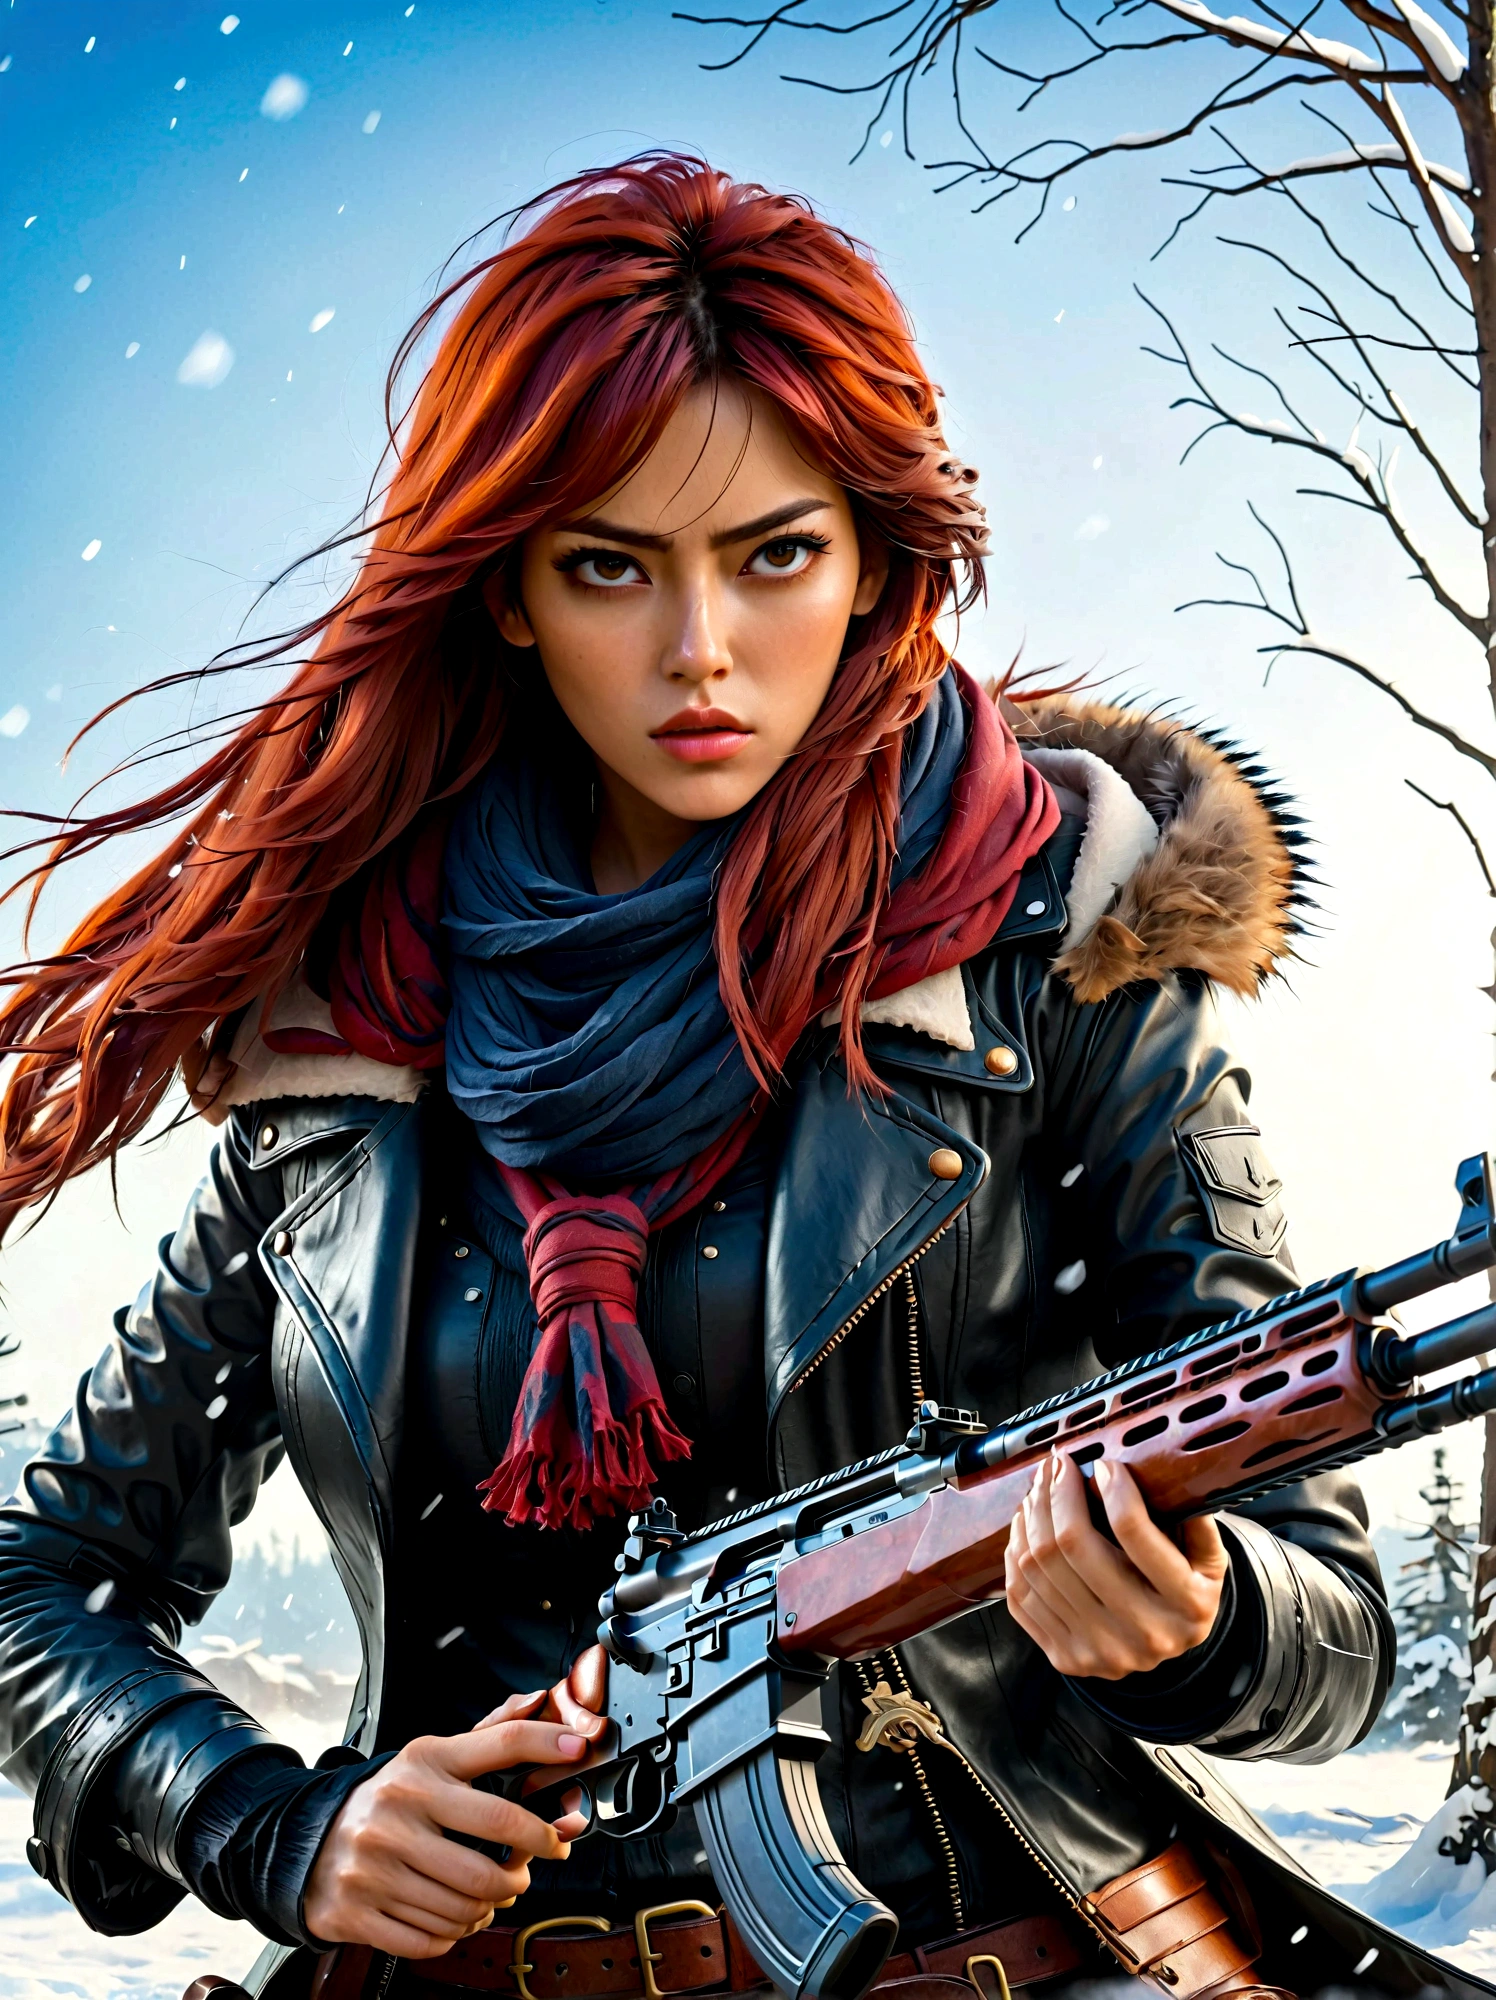 拿着步枪的女孩, (厌恶的表情:1.5), 雪地战斗姿势, 东方, 剑灵, 水墨风格, 长长的红头发, 皮革和毛皮大衣, 寒冷的, 艺术品, 3D, 4k, 详细的, 实际的